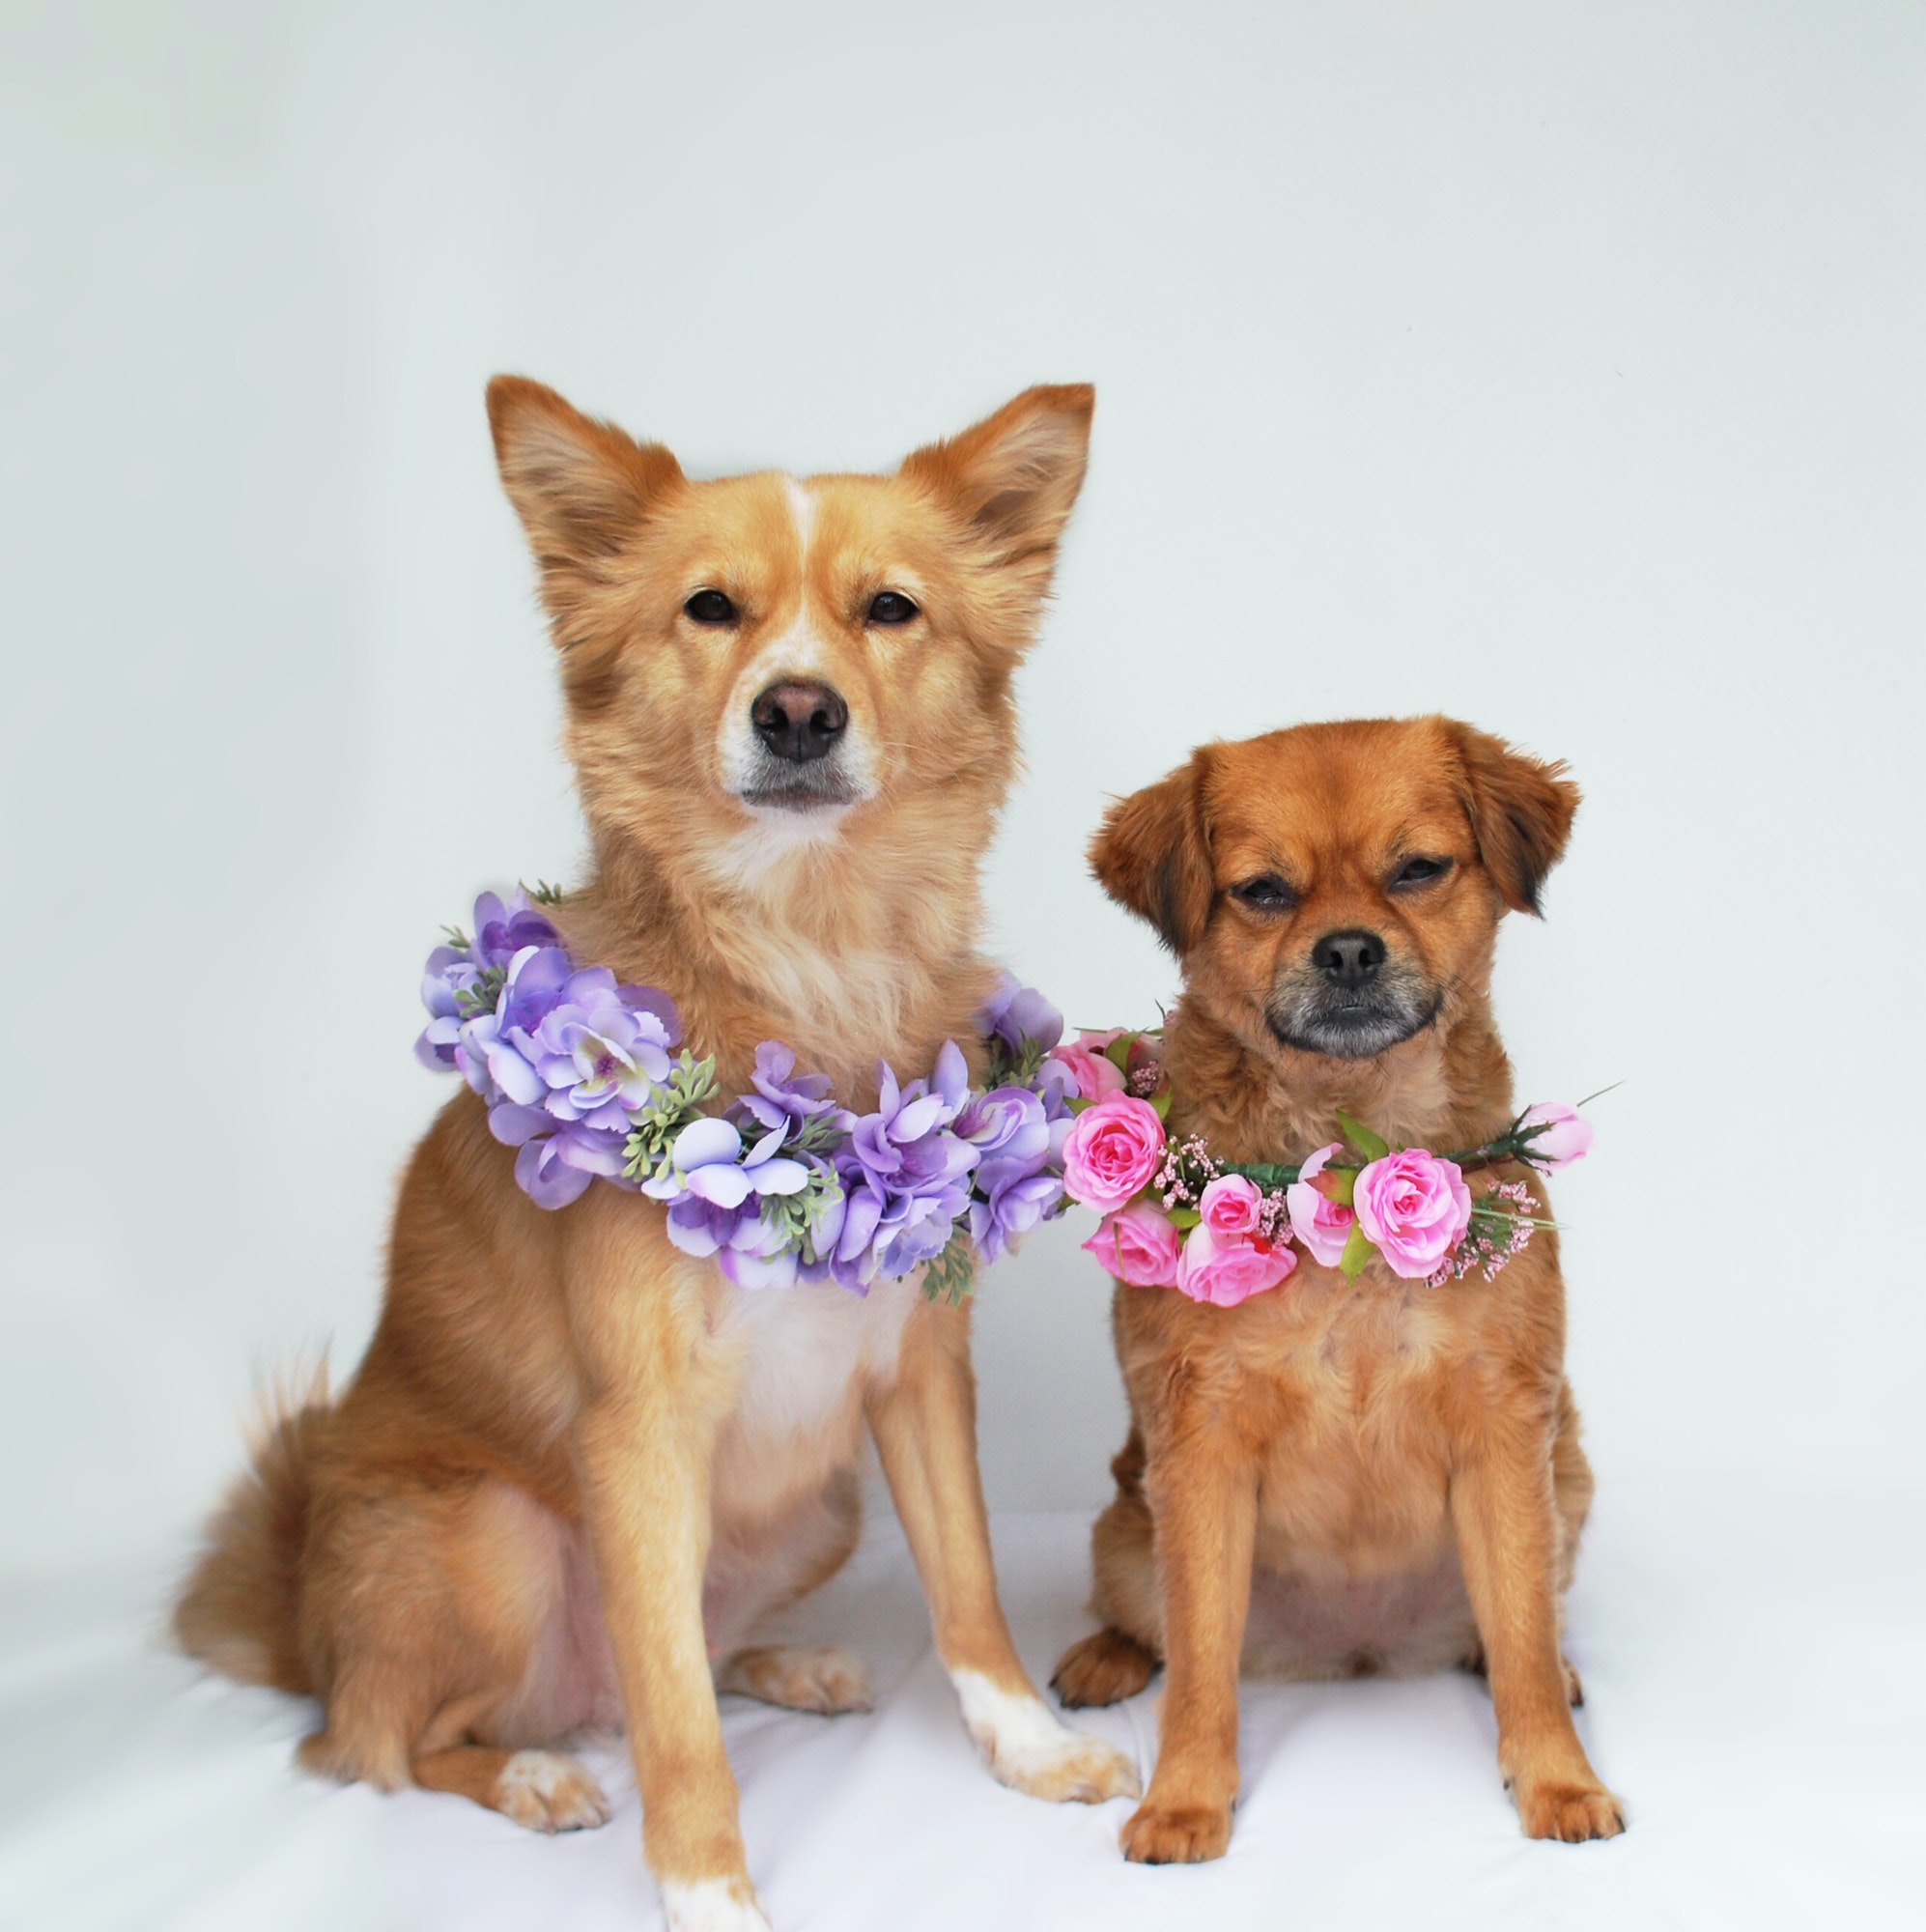 Dogs in flowers